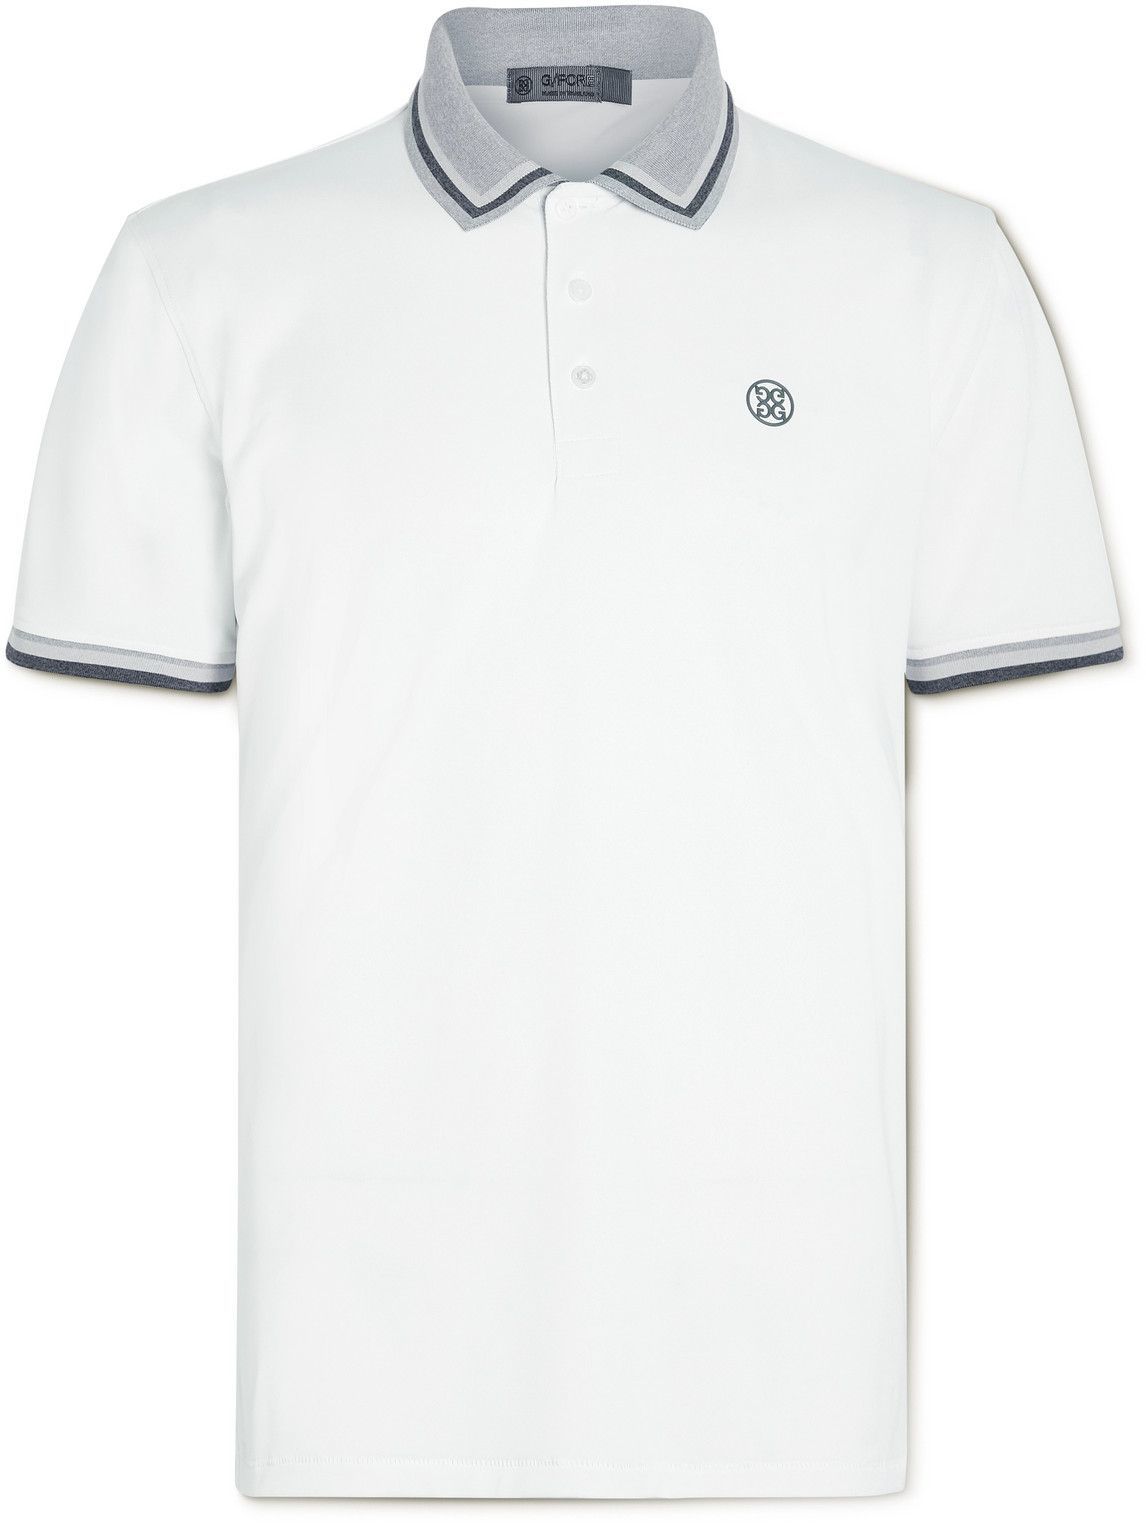 G/FORE - Piqué Golf Polo Shirt - White G/FORE